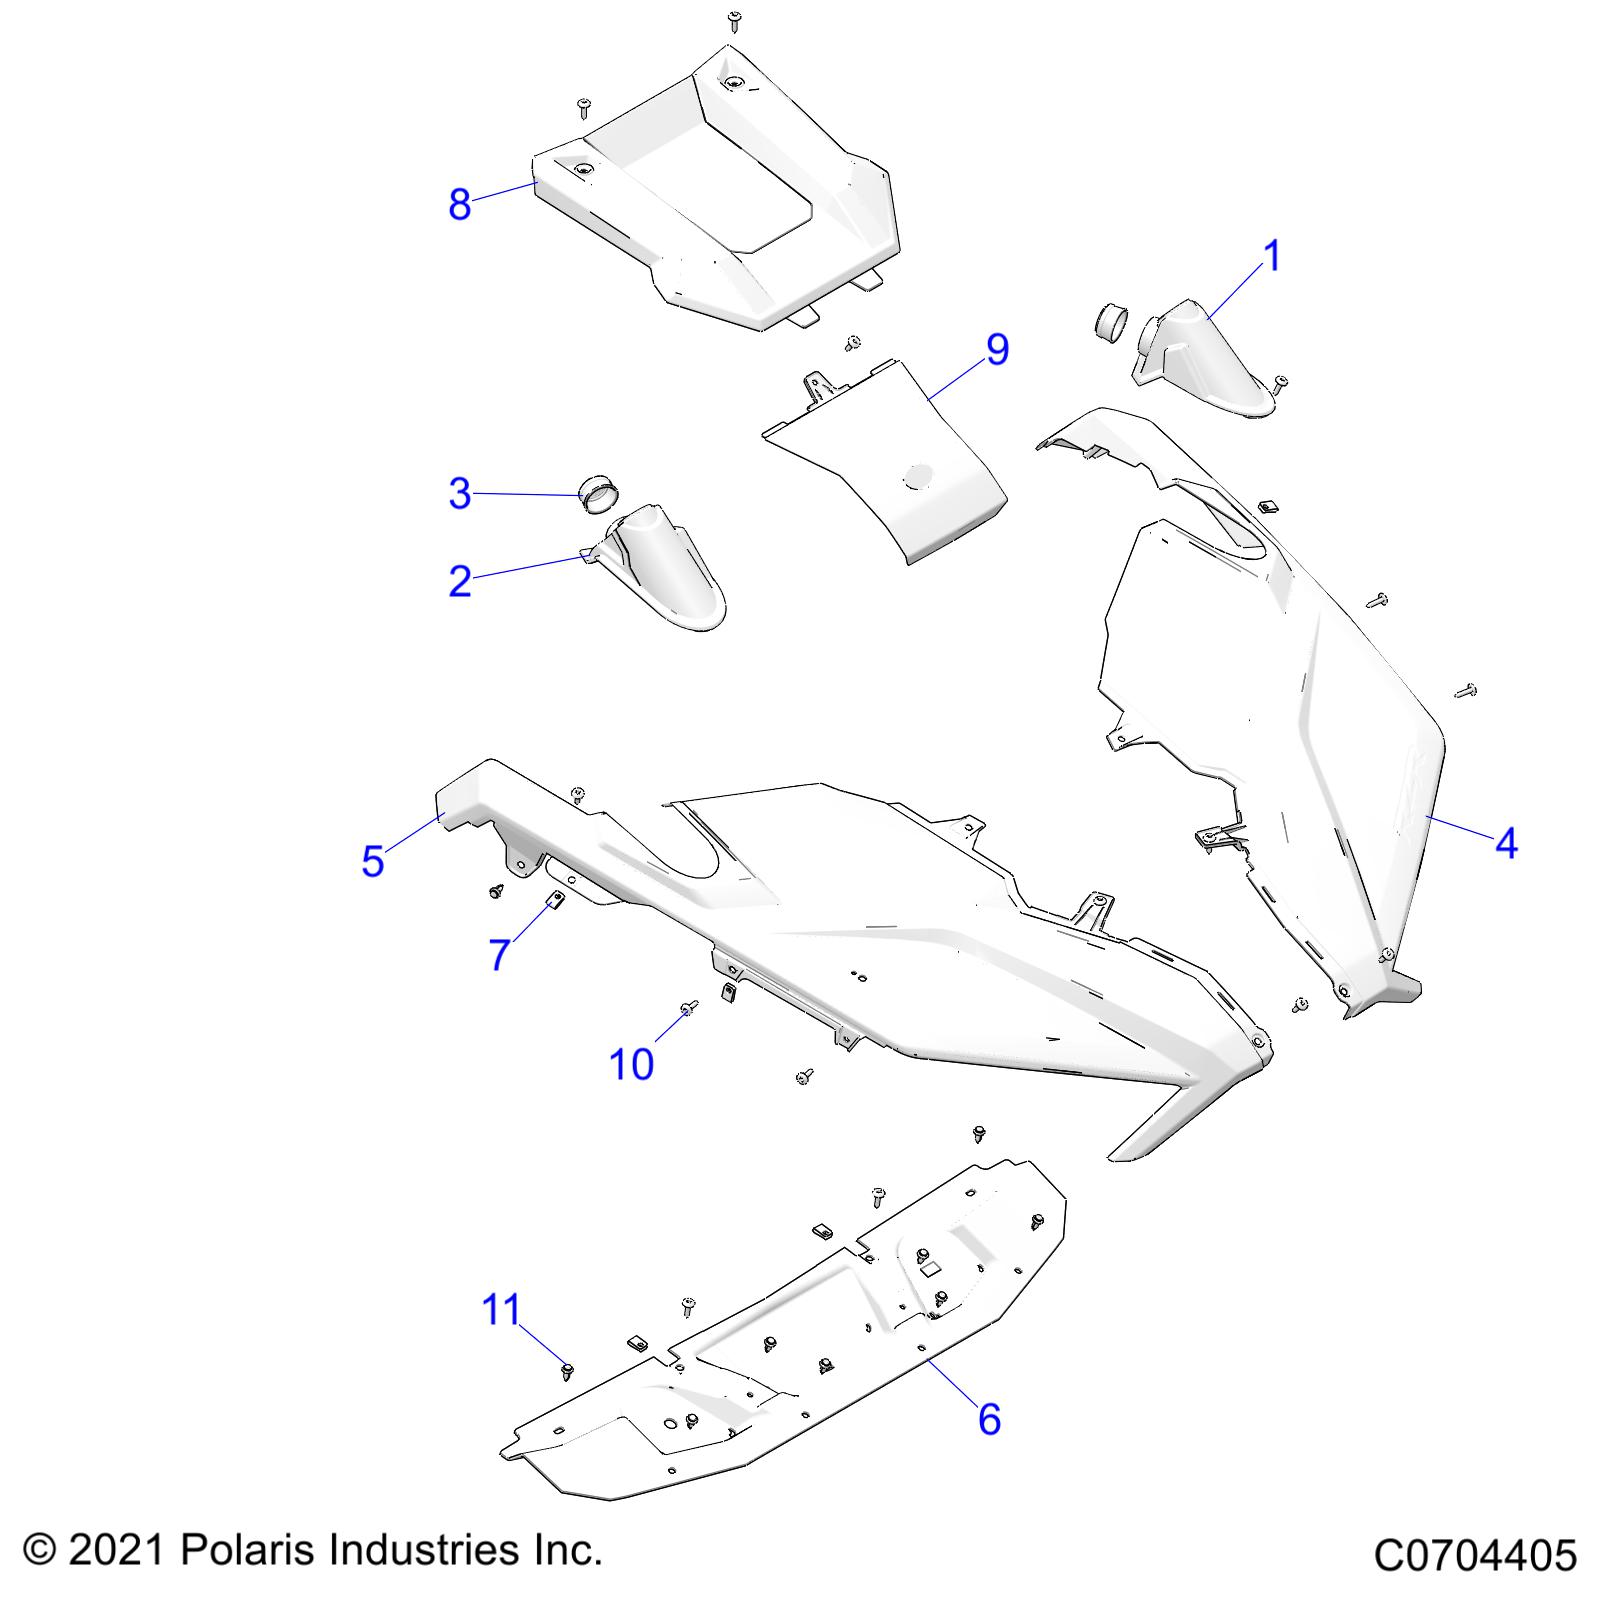 Foto diagrama Polaris que contem a peça 5456017-799